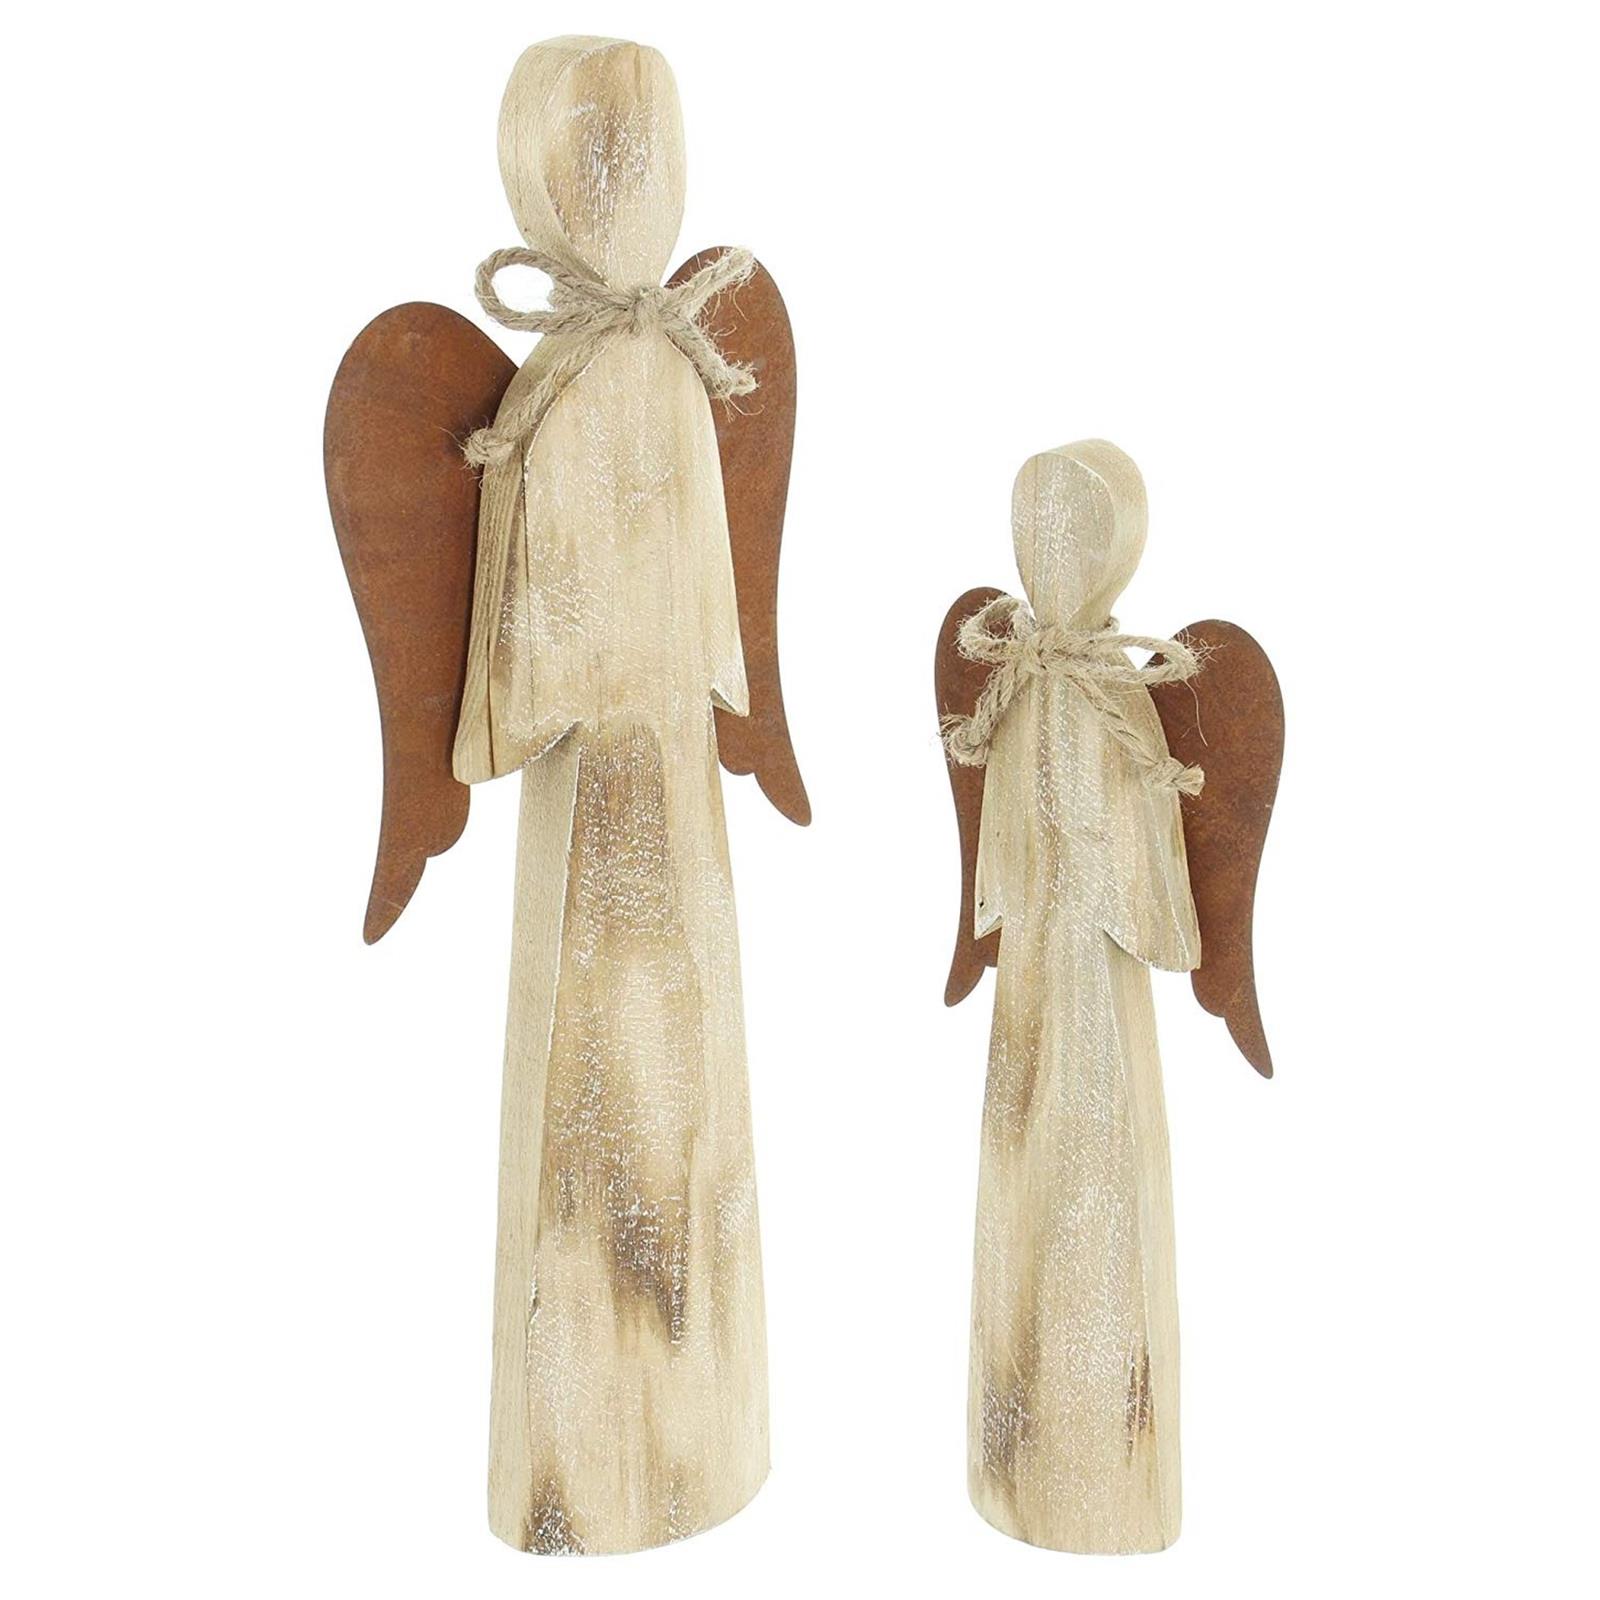 2 Deko Engel aus Holz, 28 + 38 cm hoch, Weihnachtsdeko, Dekofigur,  Weihnachtsengel